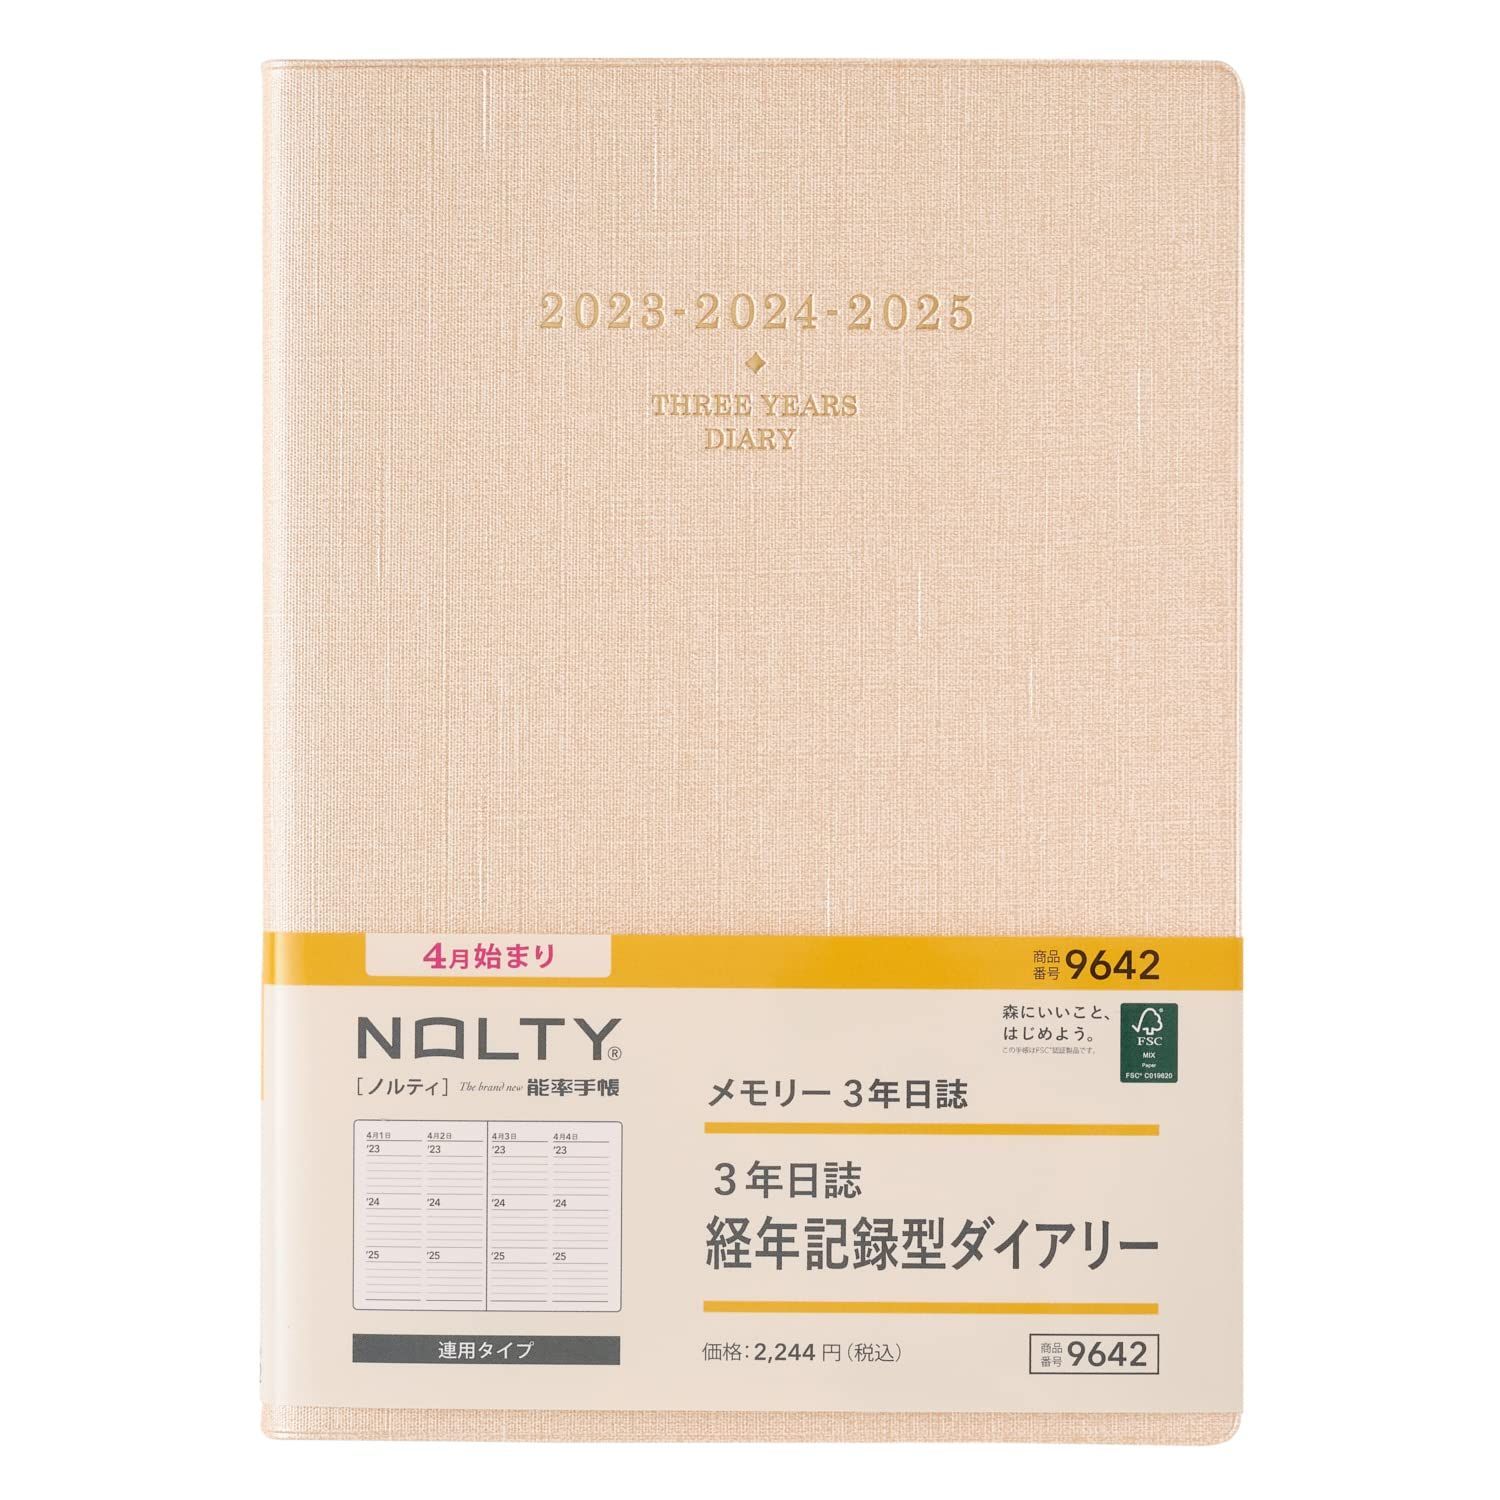 新品 NOLTY 能率 手帳 2023年 4月始まり A5 メモリー3年日誌 hacchi.8 メルカリ